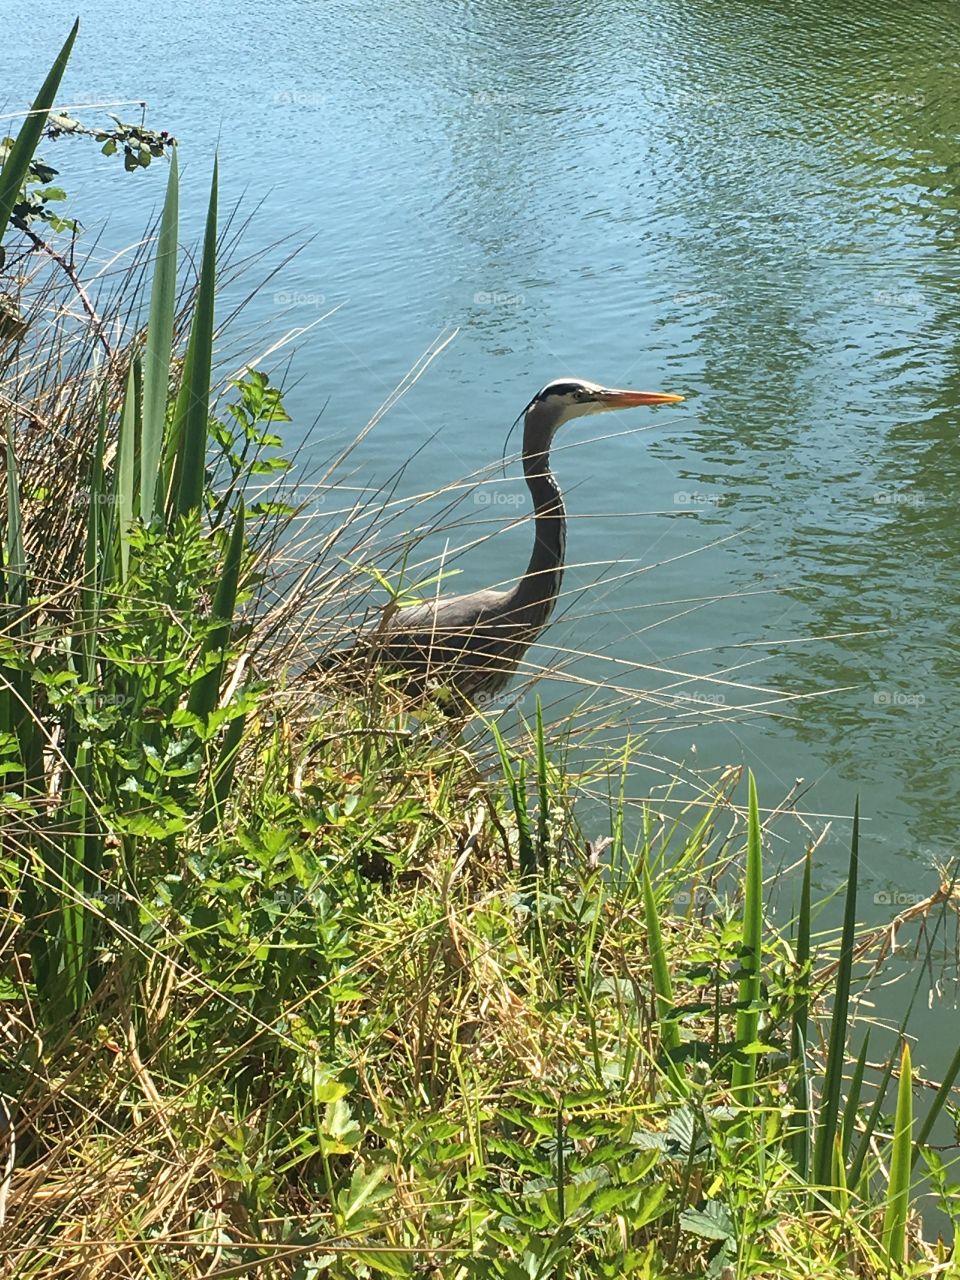 Wild bird near edge of water